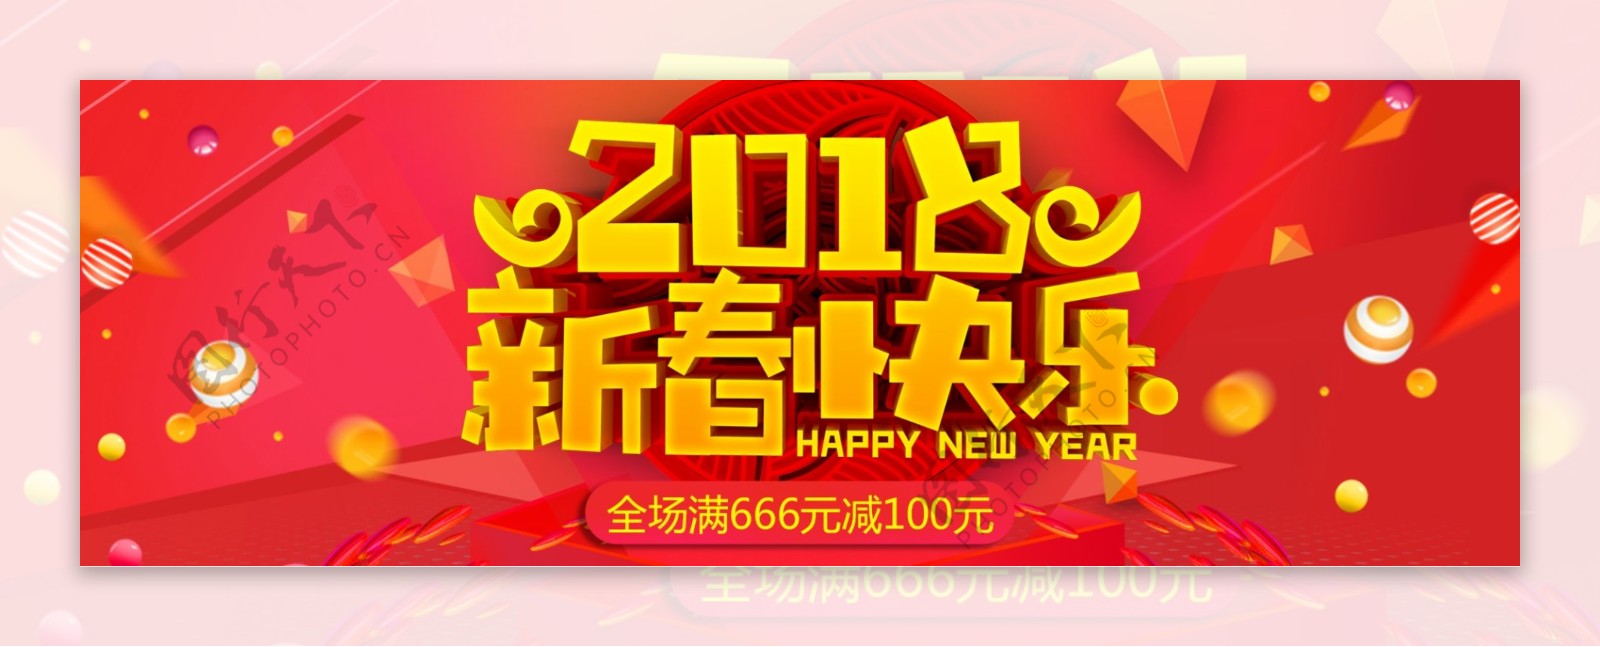 红色淘宝电商新春节日活动海报banner